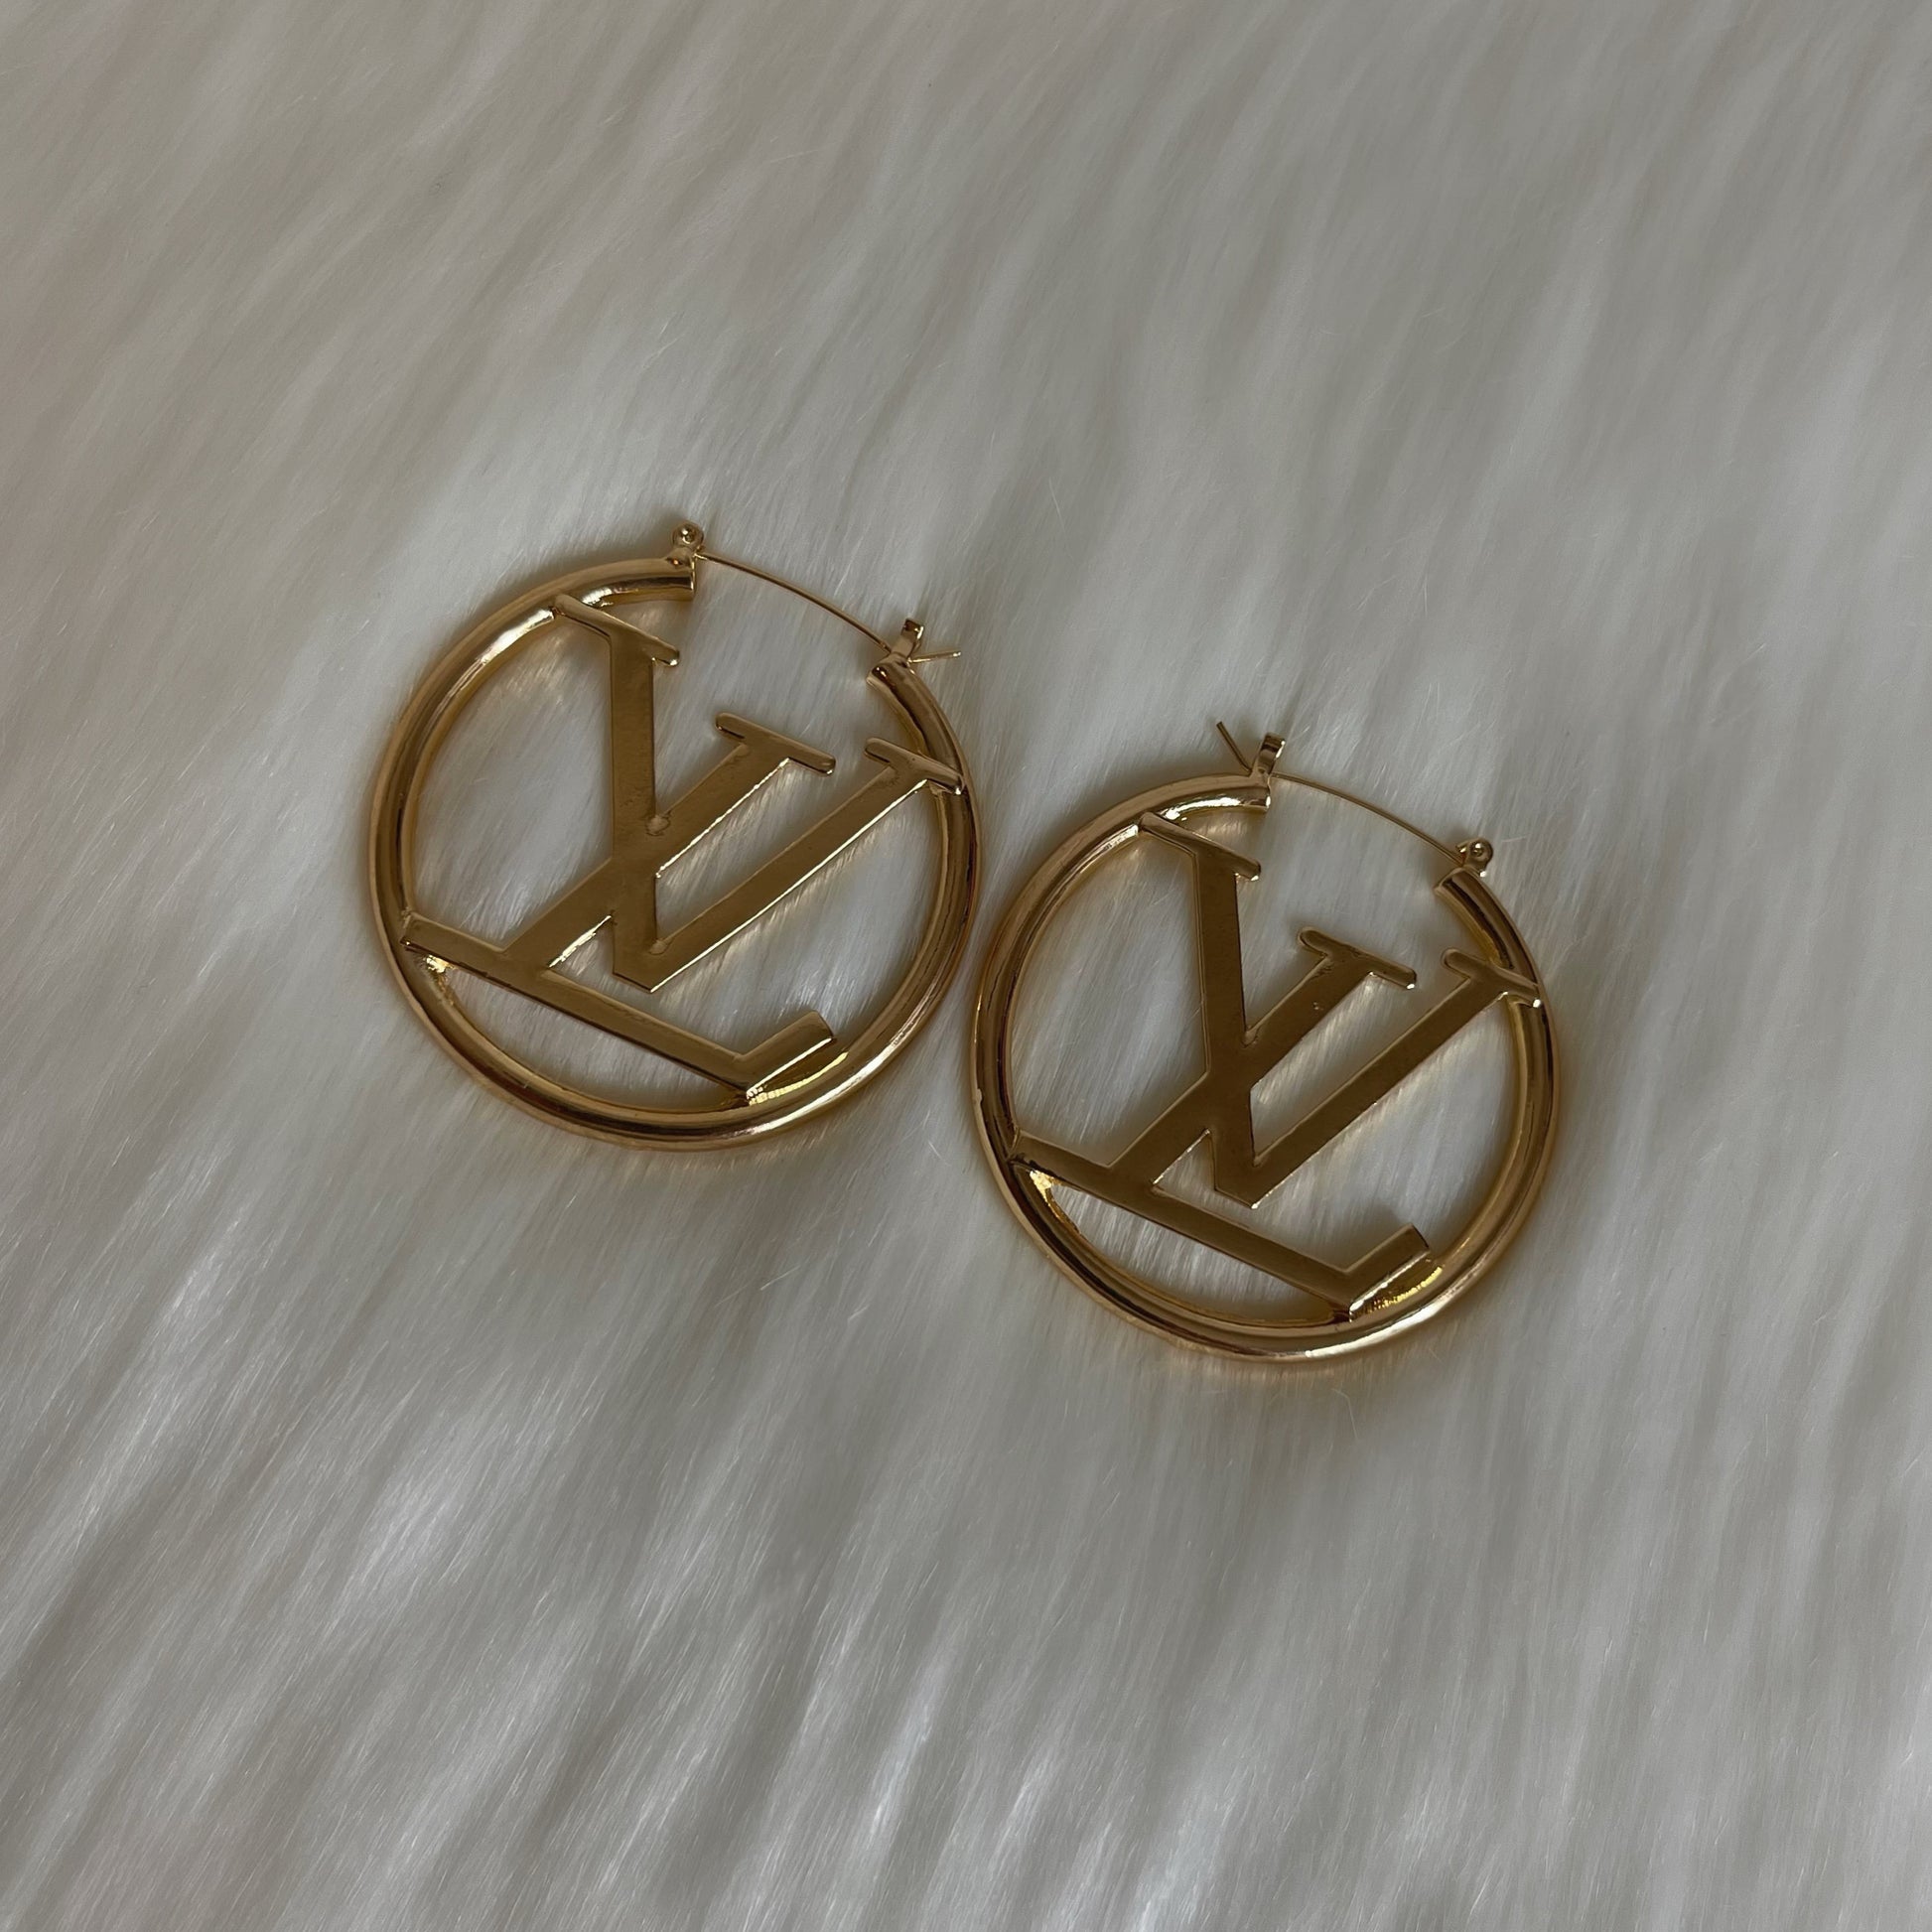 Luxe LV hoop earrings